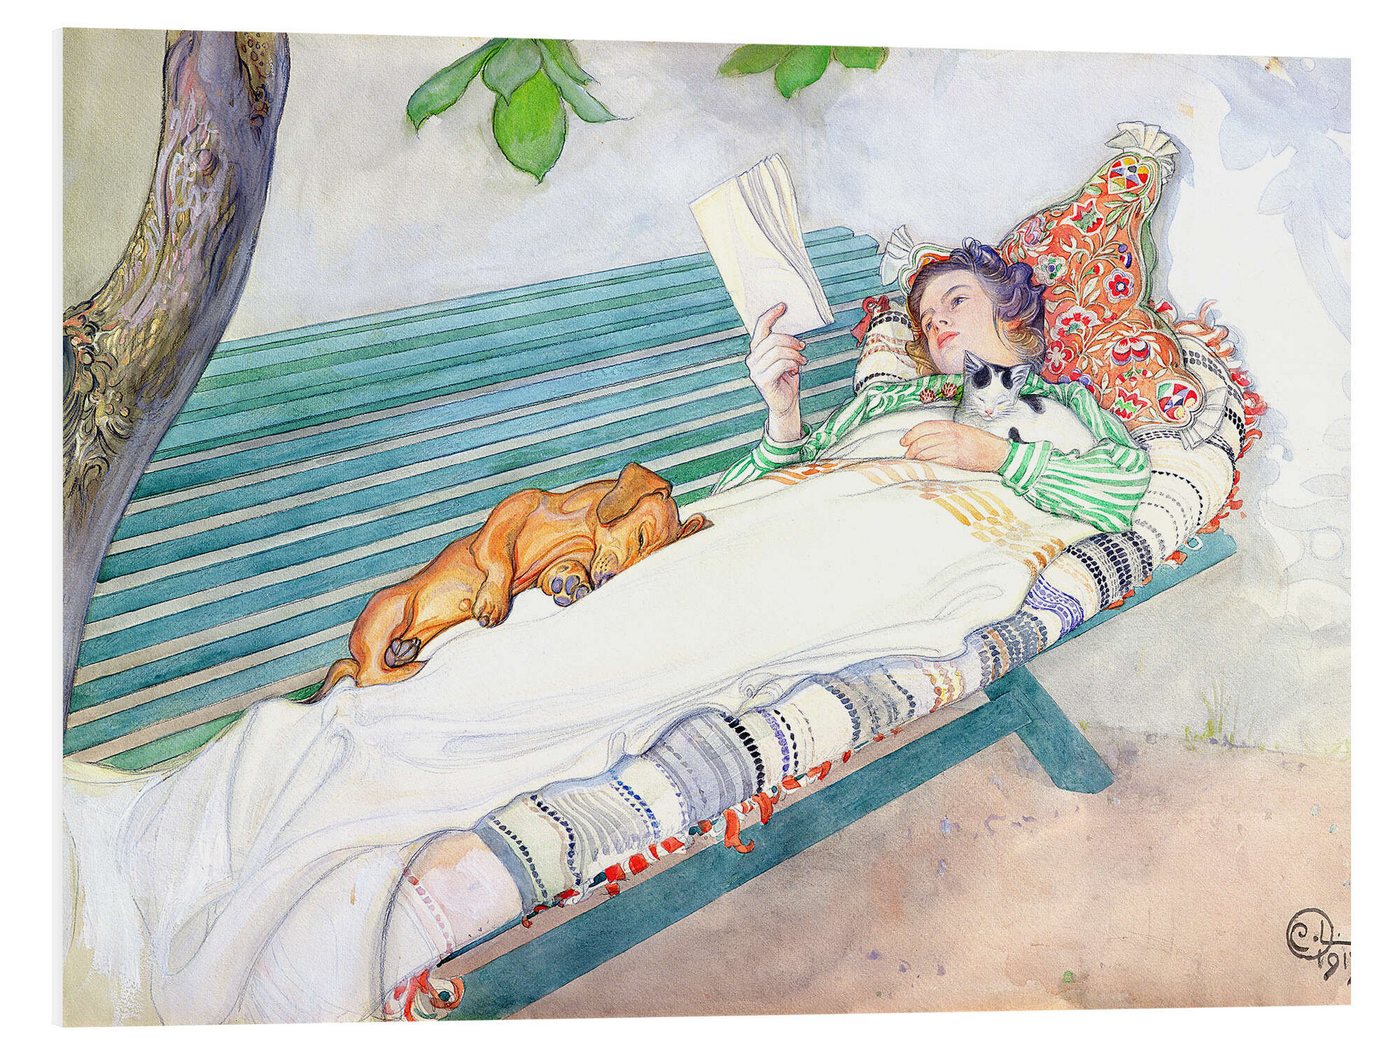 Posterlounge Forex-Bild Carl Larsson, Auf einer Bank liegende Frau, Badezimmer Landhausstil Malerei von Posterlounge